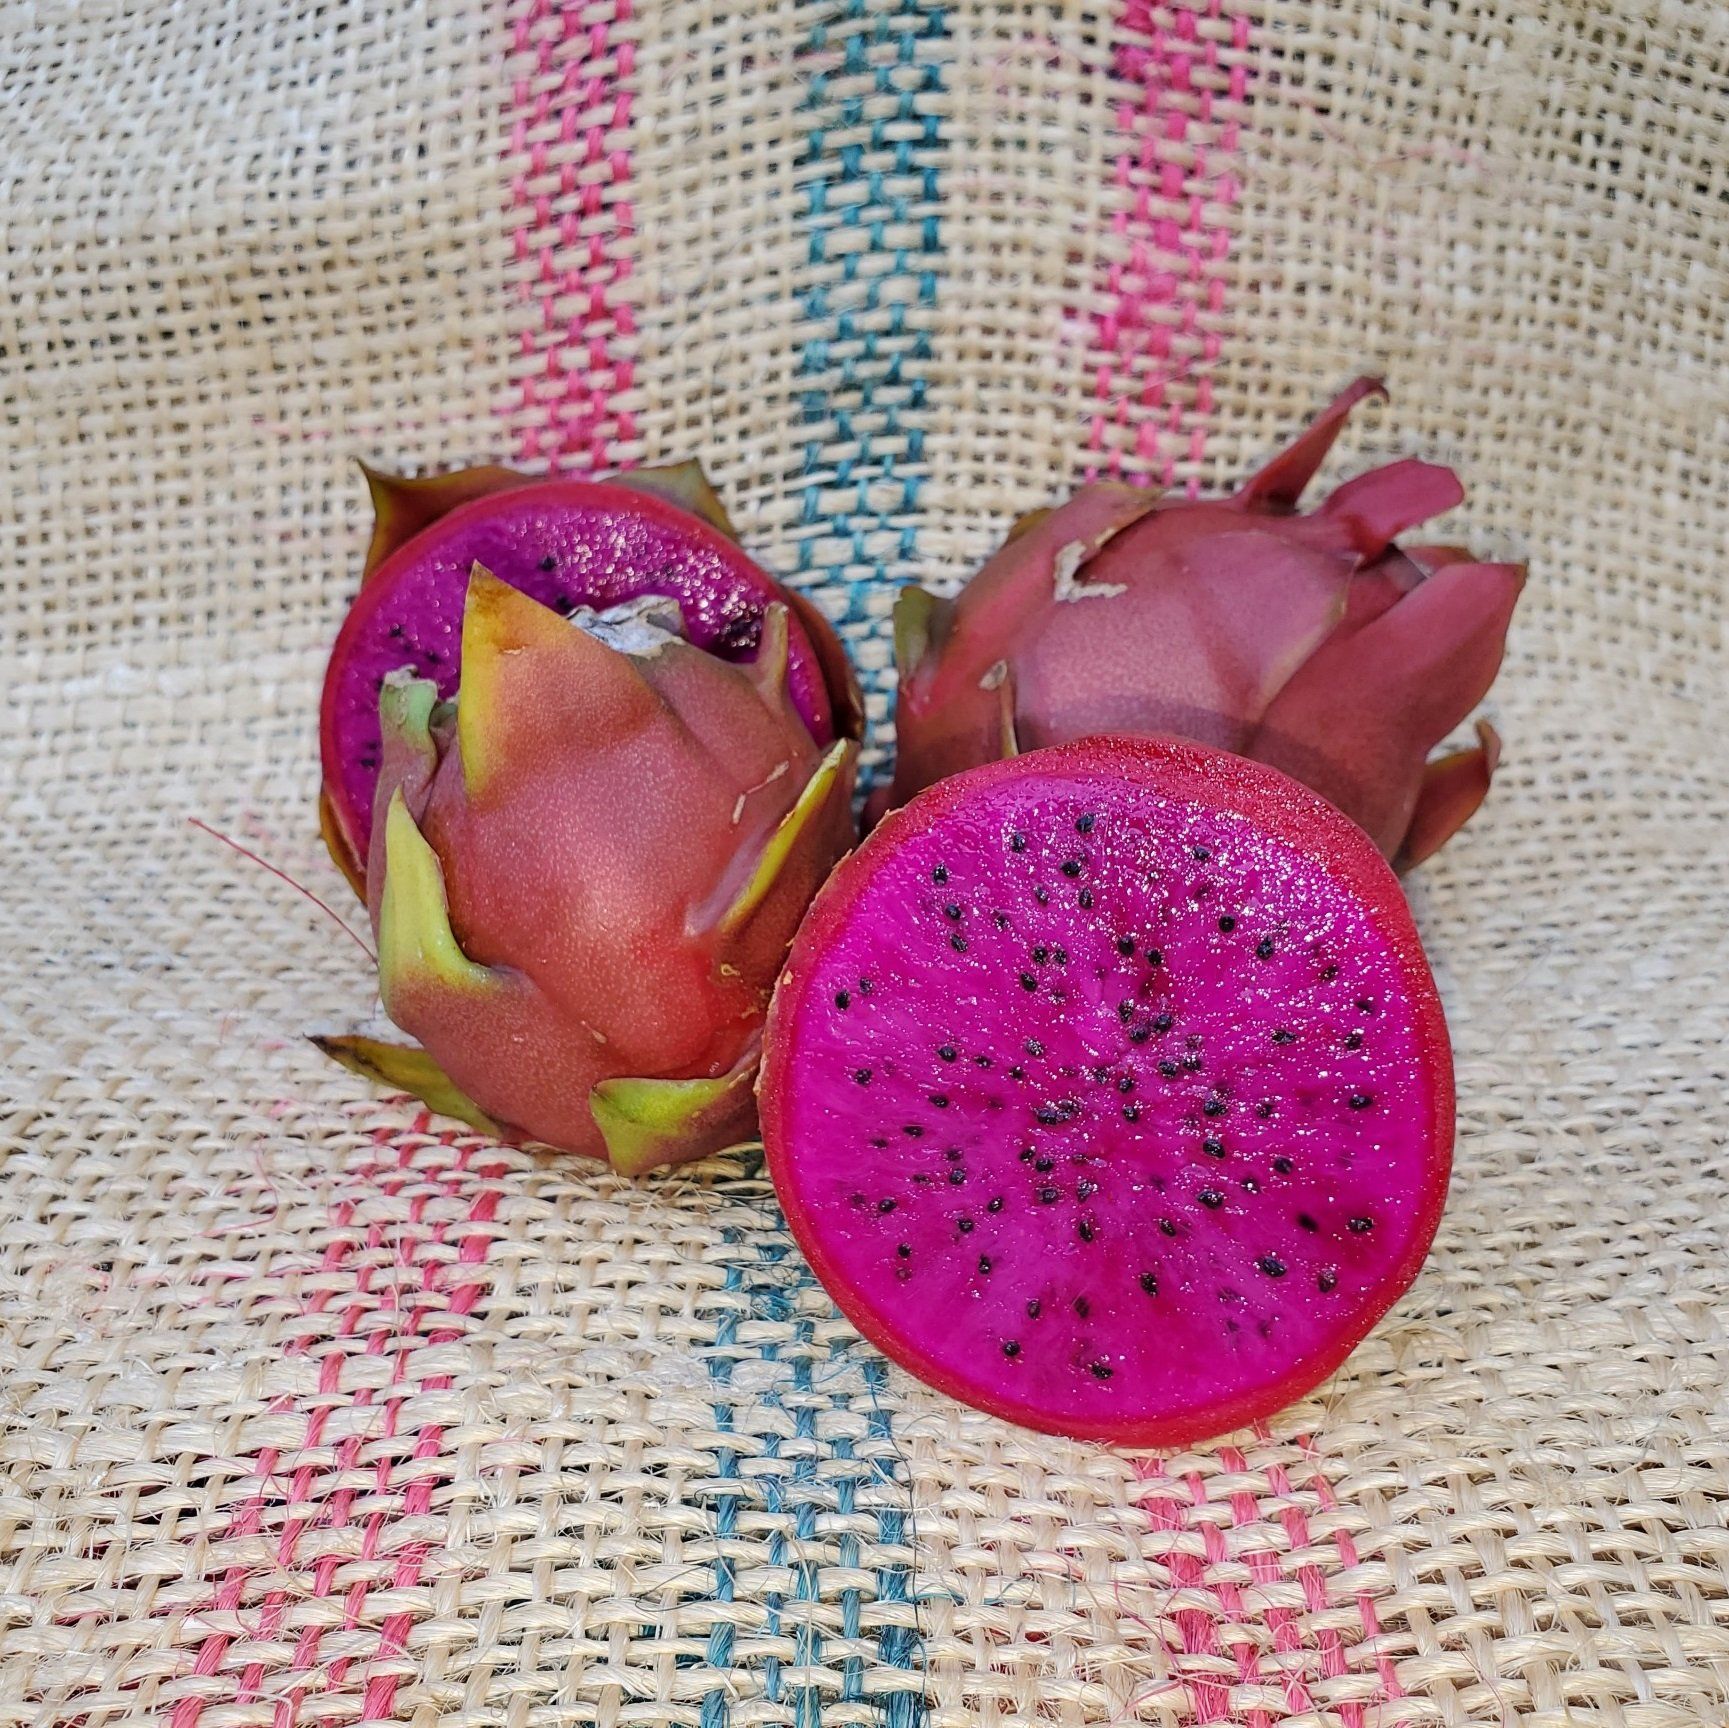 American Beauty dragon fruit cut in half